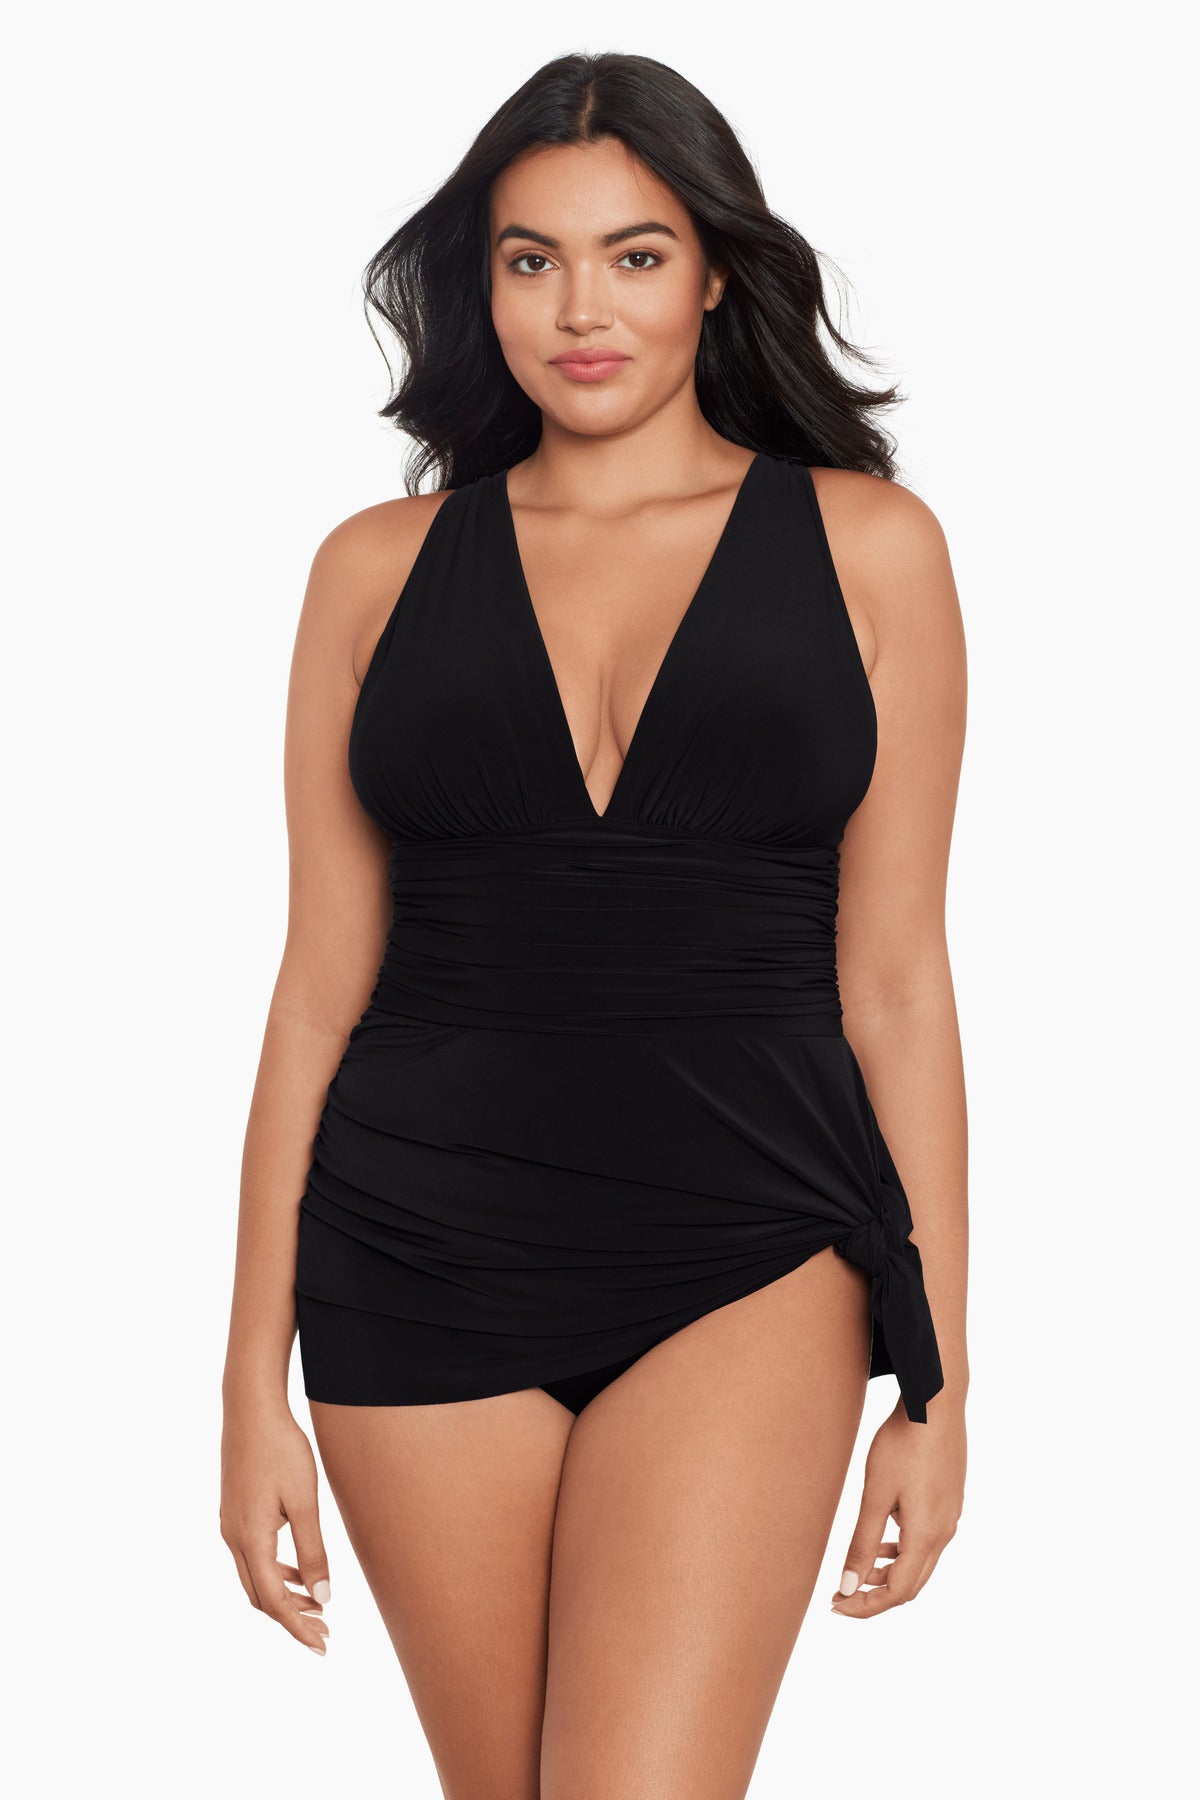 Bulk-buy Hot Sale Lycra Material Girl′s Swim Dress Swimsuit for